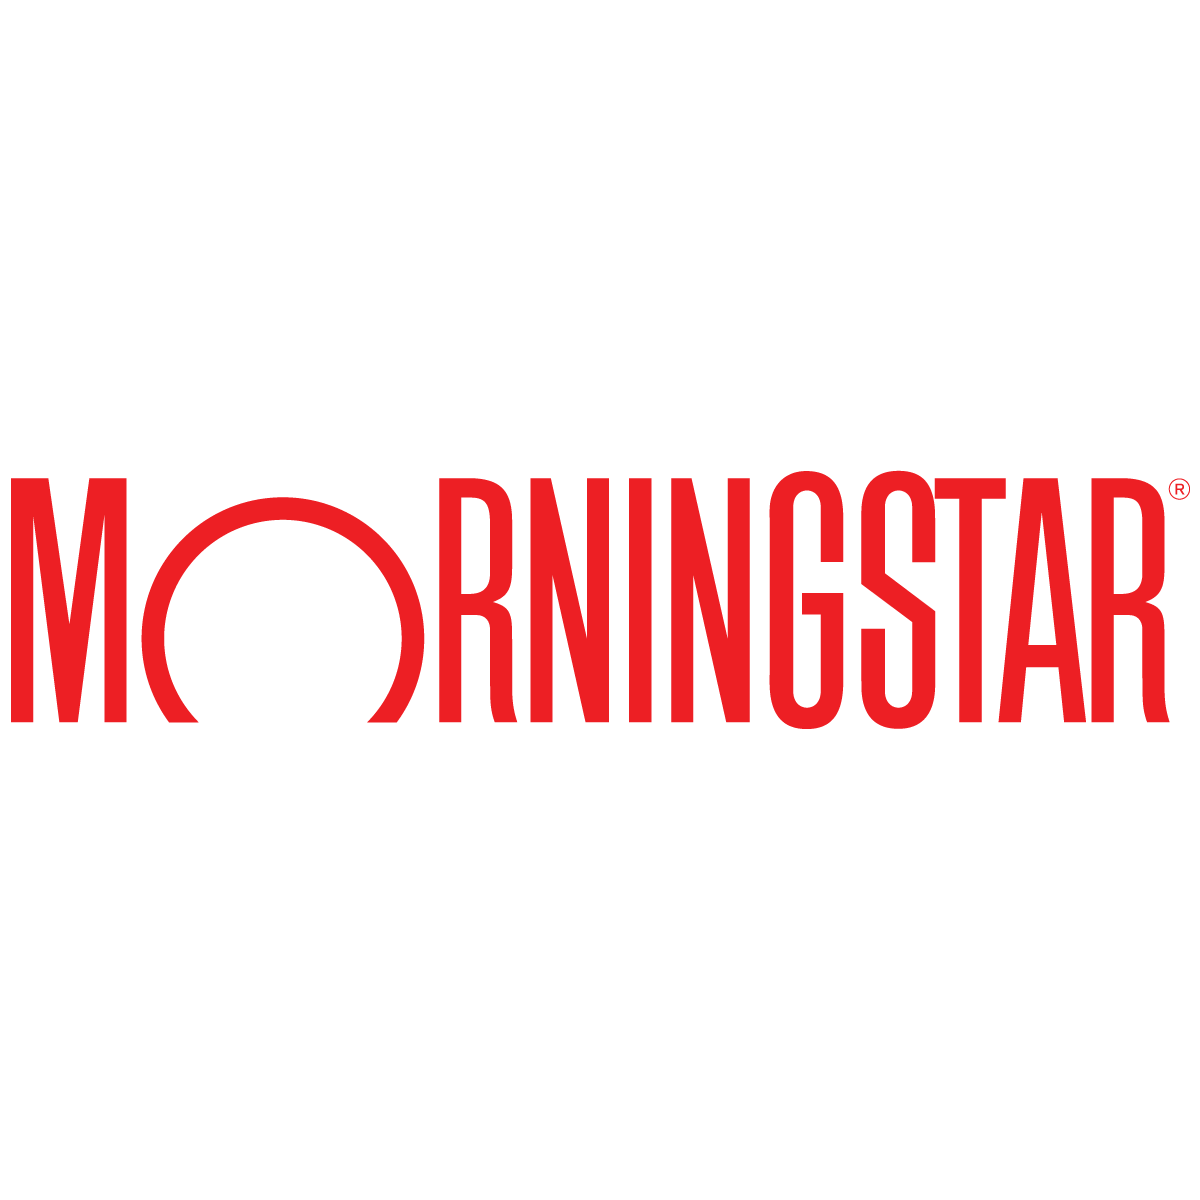 Morningstar Inc._logo